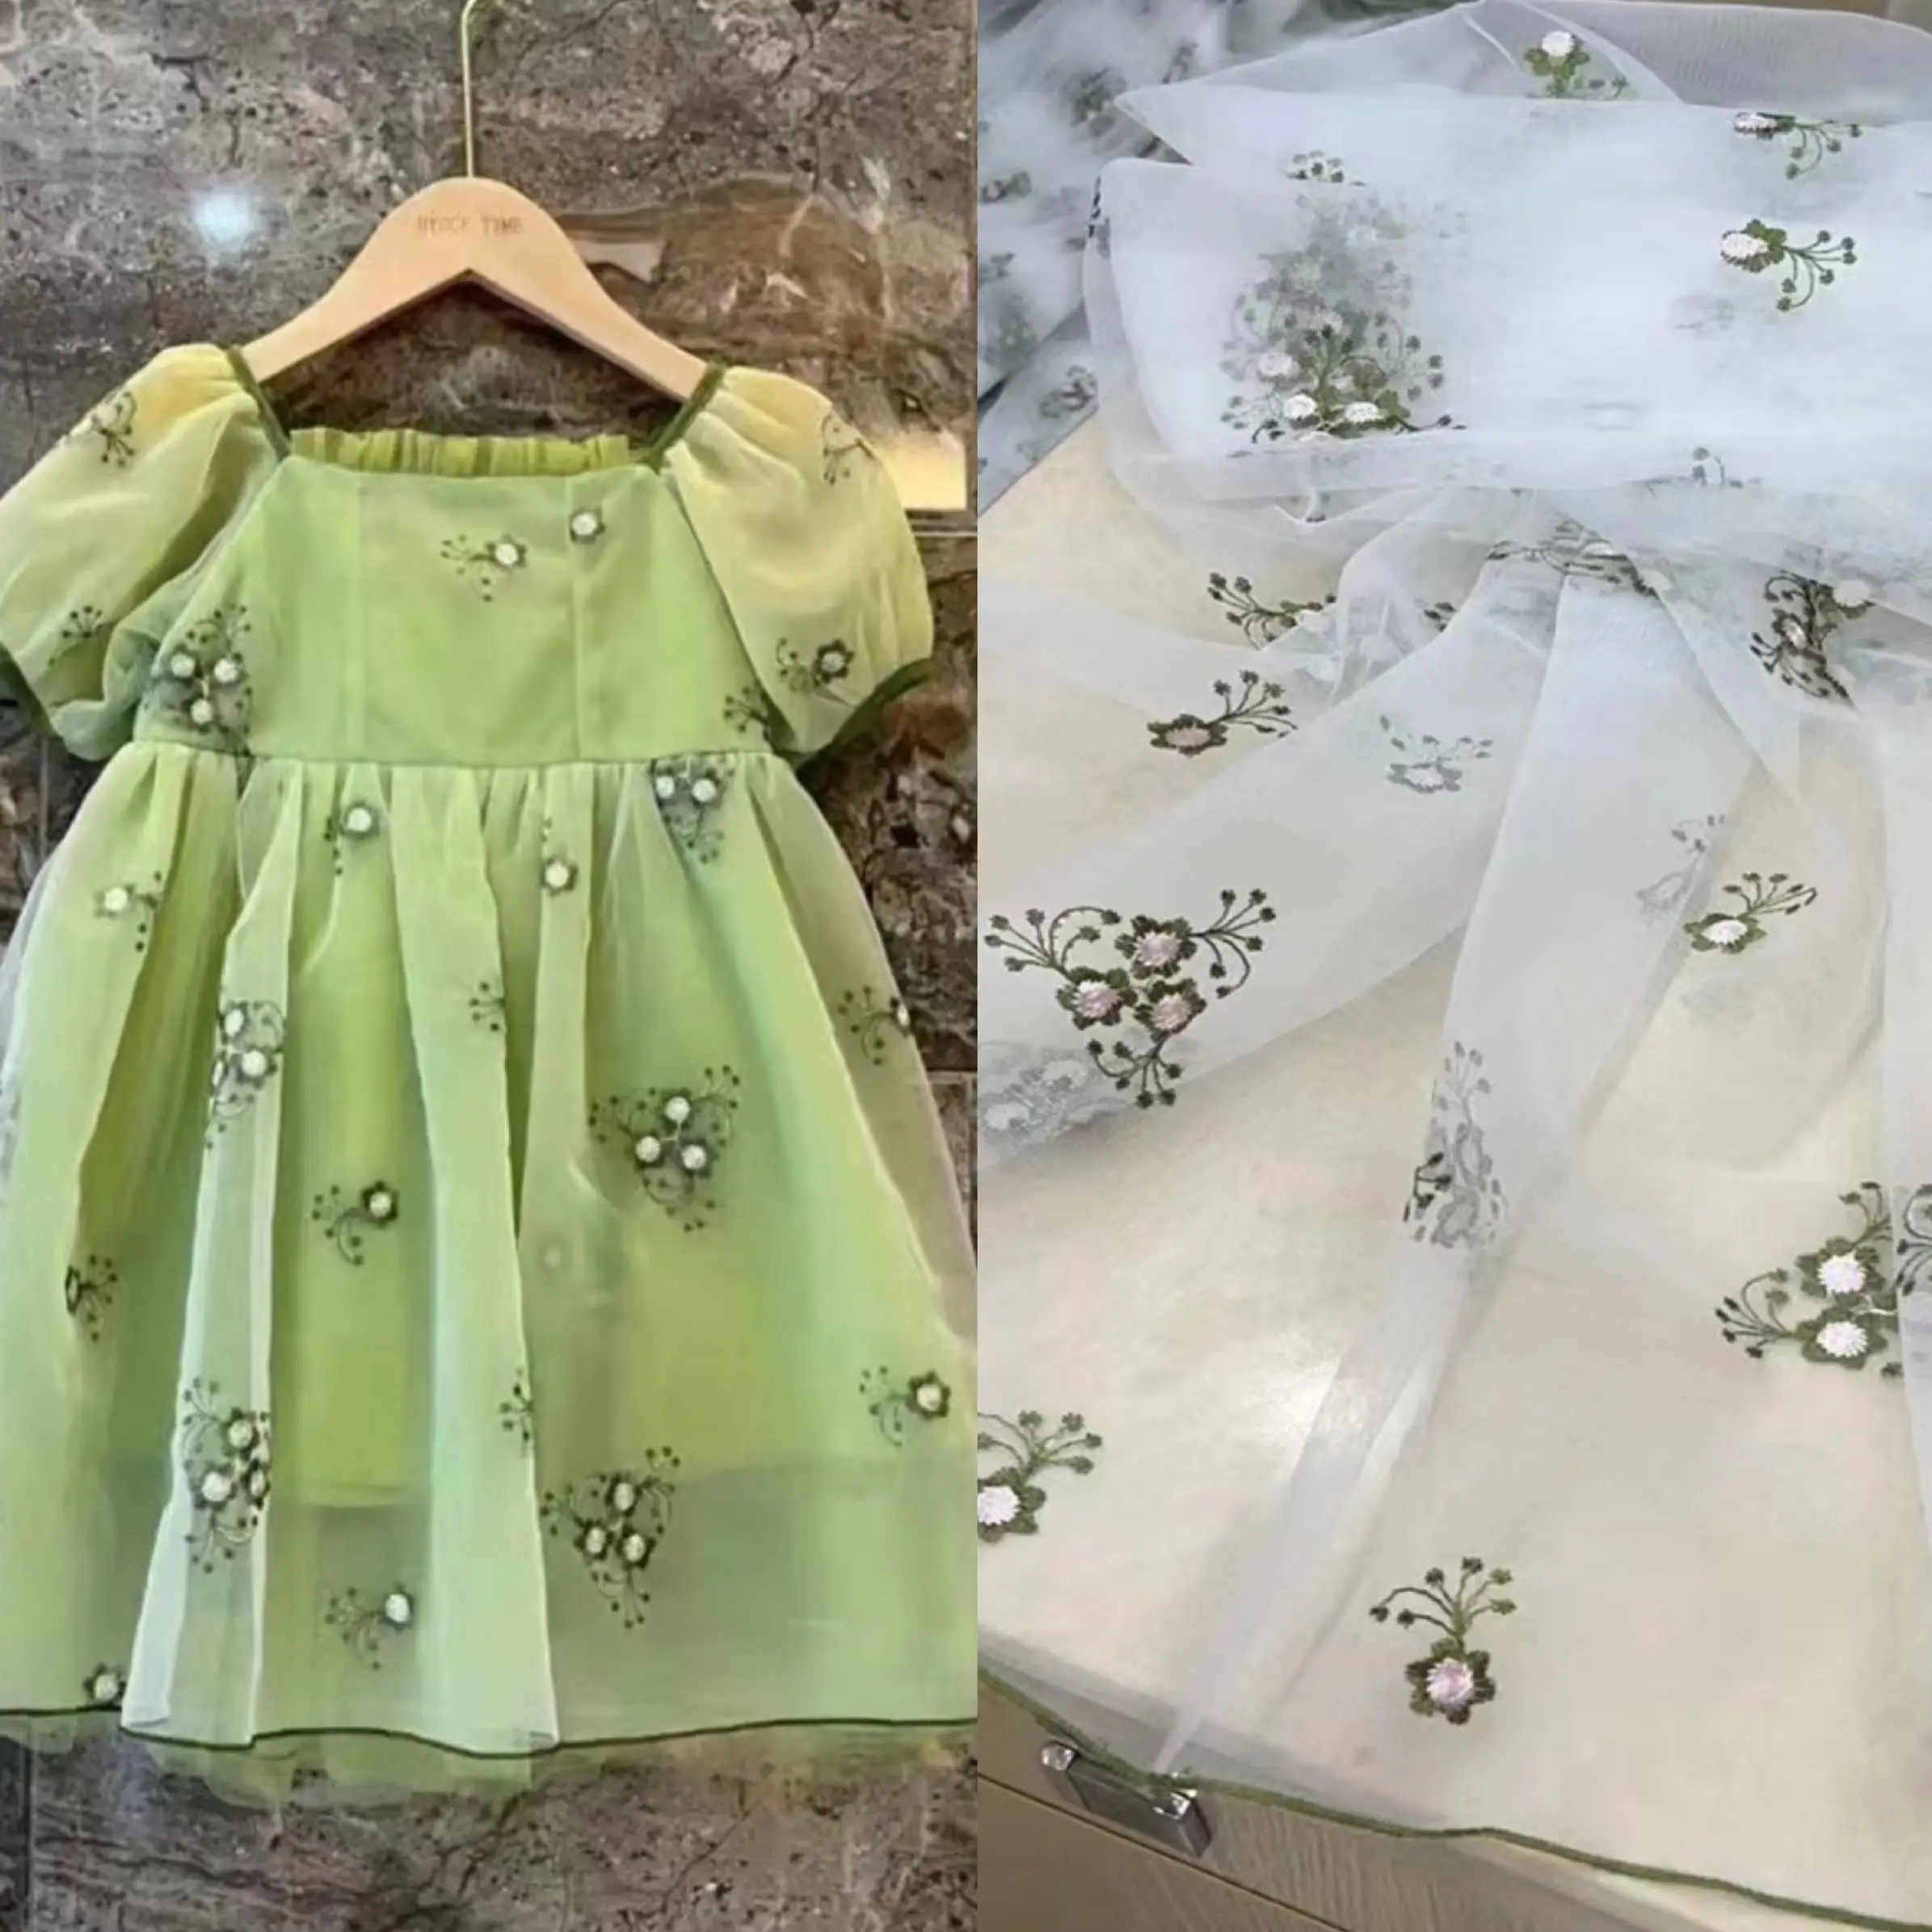 Leichte transparente atmungsaktive Stickerei schöne Blumen Organza-Stoff für die Herstellung von Kinder kleidung oder Hochzeits kleid